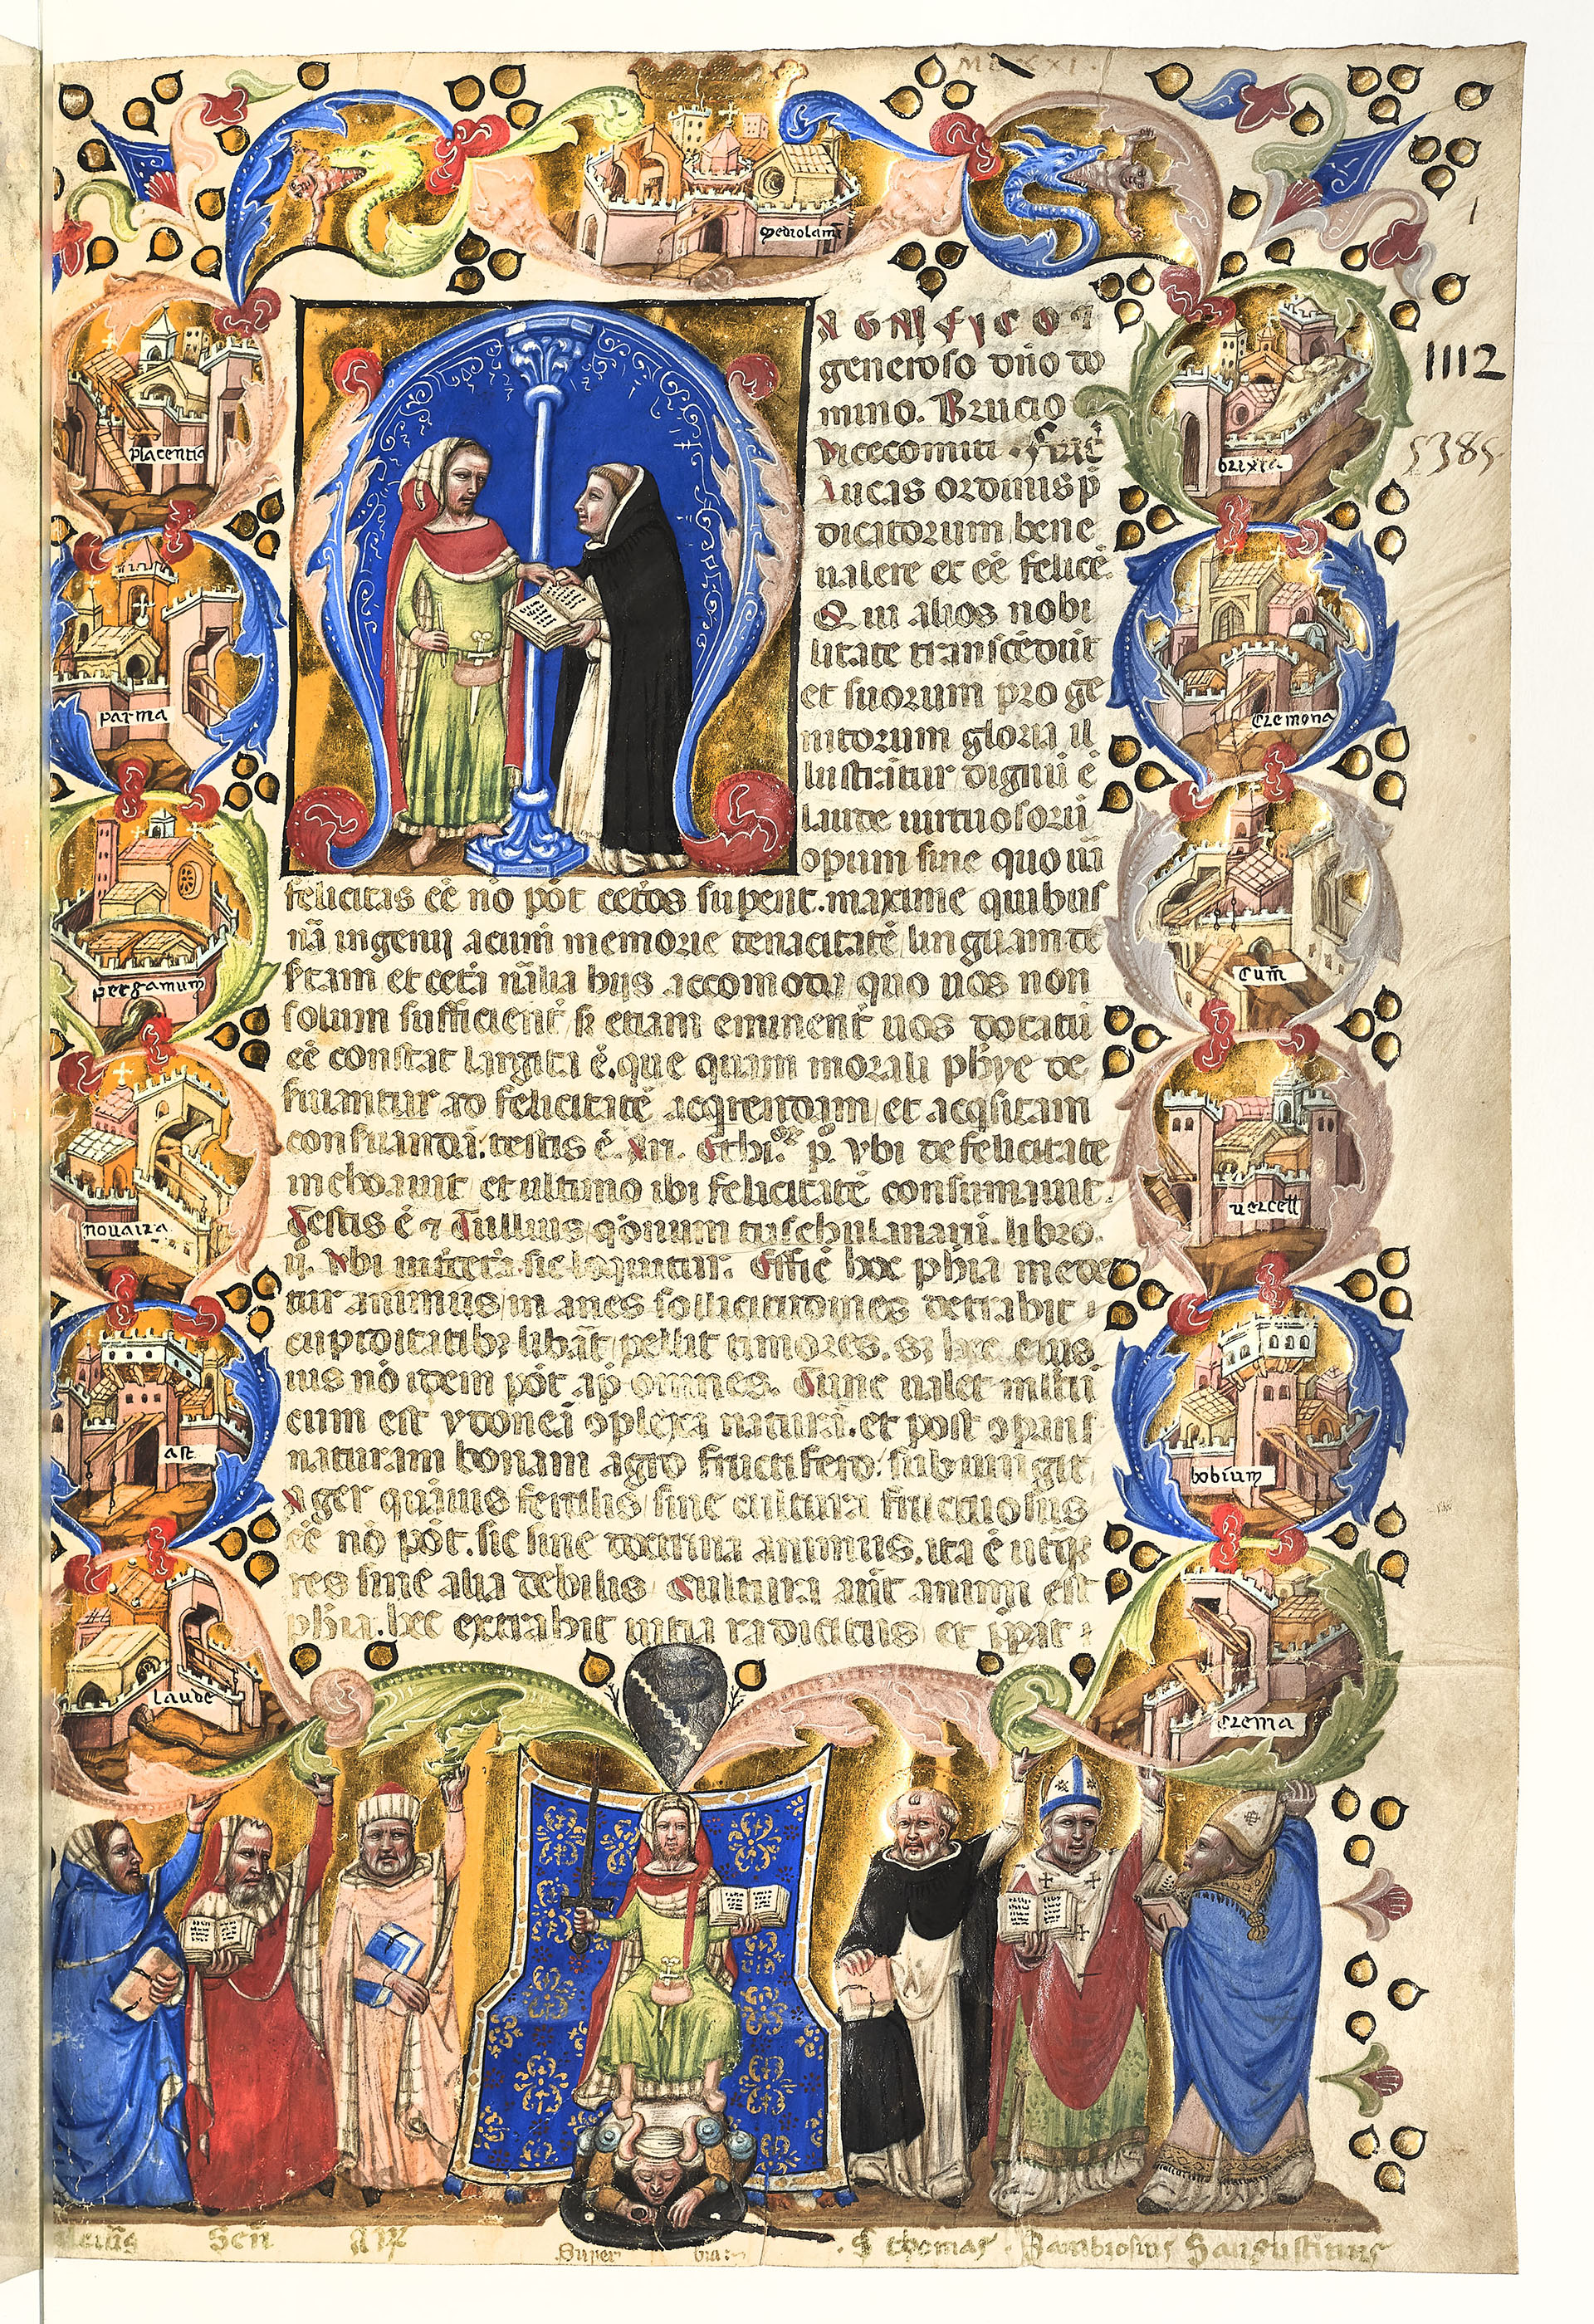 Luca Mannelli, Compendium moralis philosophiae, ante 1346(?), Parigi, Bibliothèque nationale de France. © Bibliothèque nationale de France. 